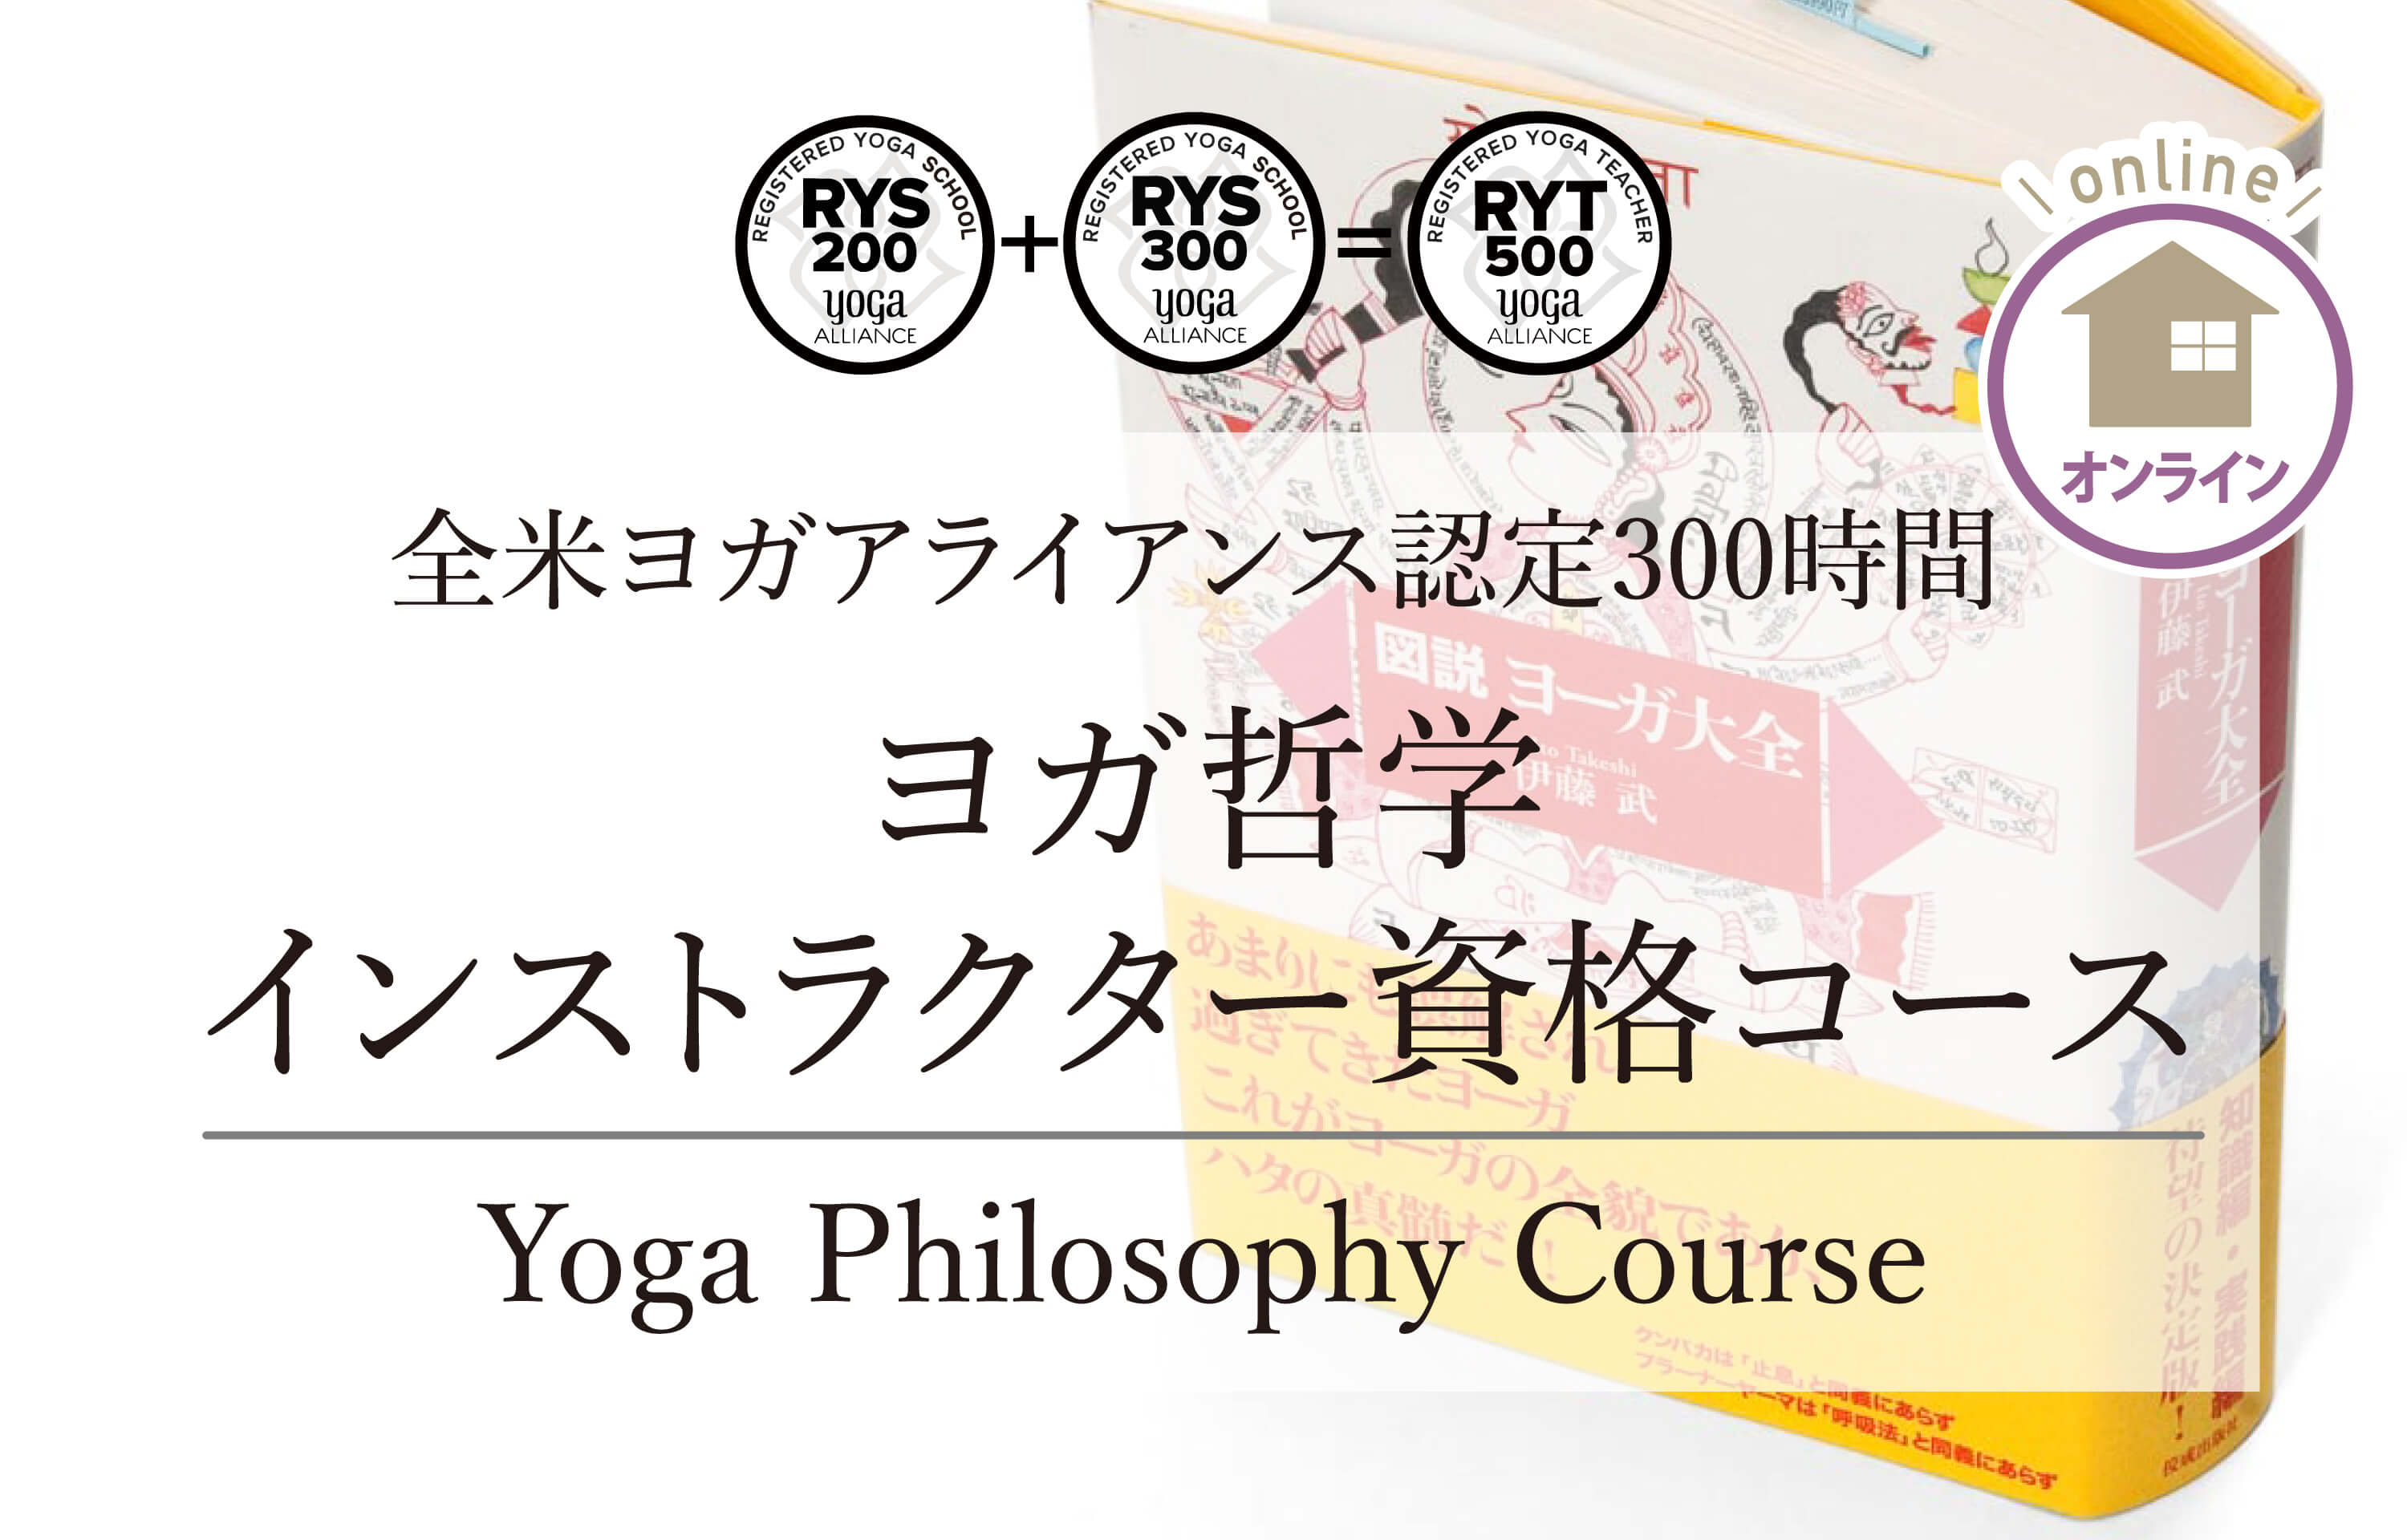 ヨガ哲学インストラクター資格コース  オンラインピラティス資格コース